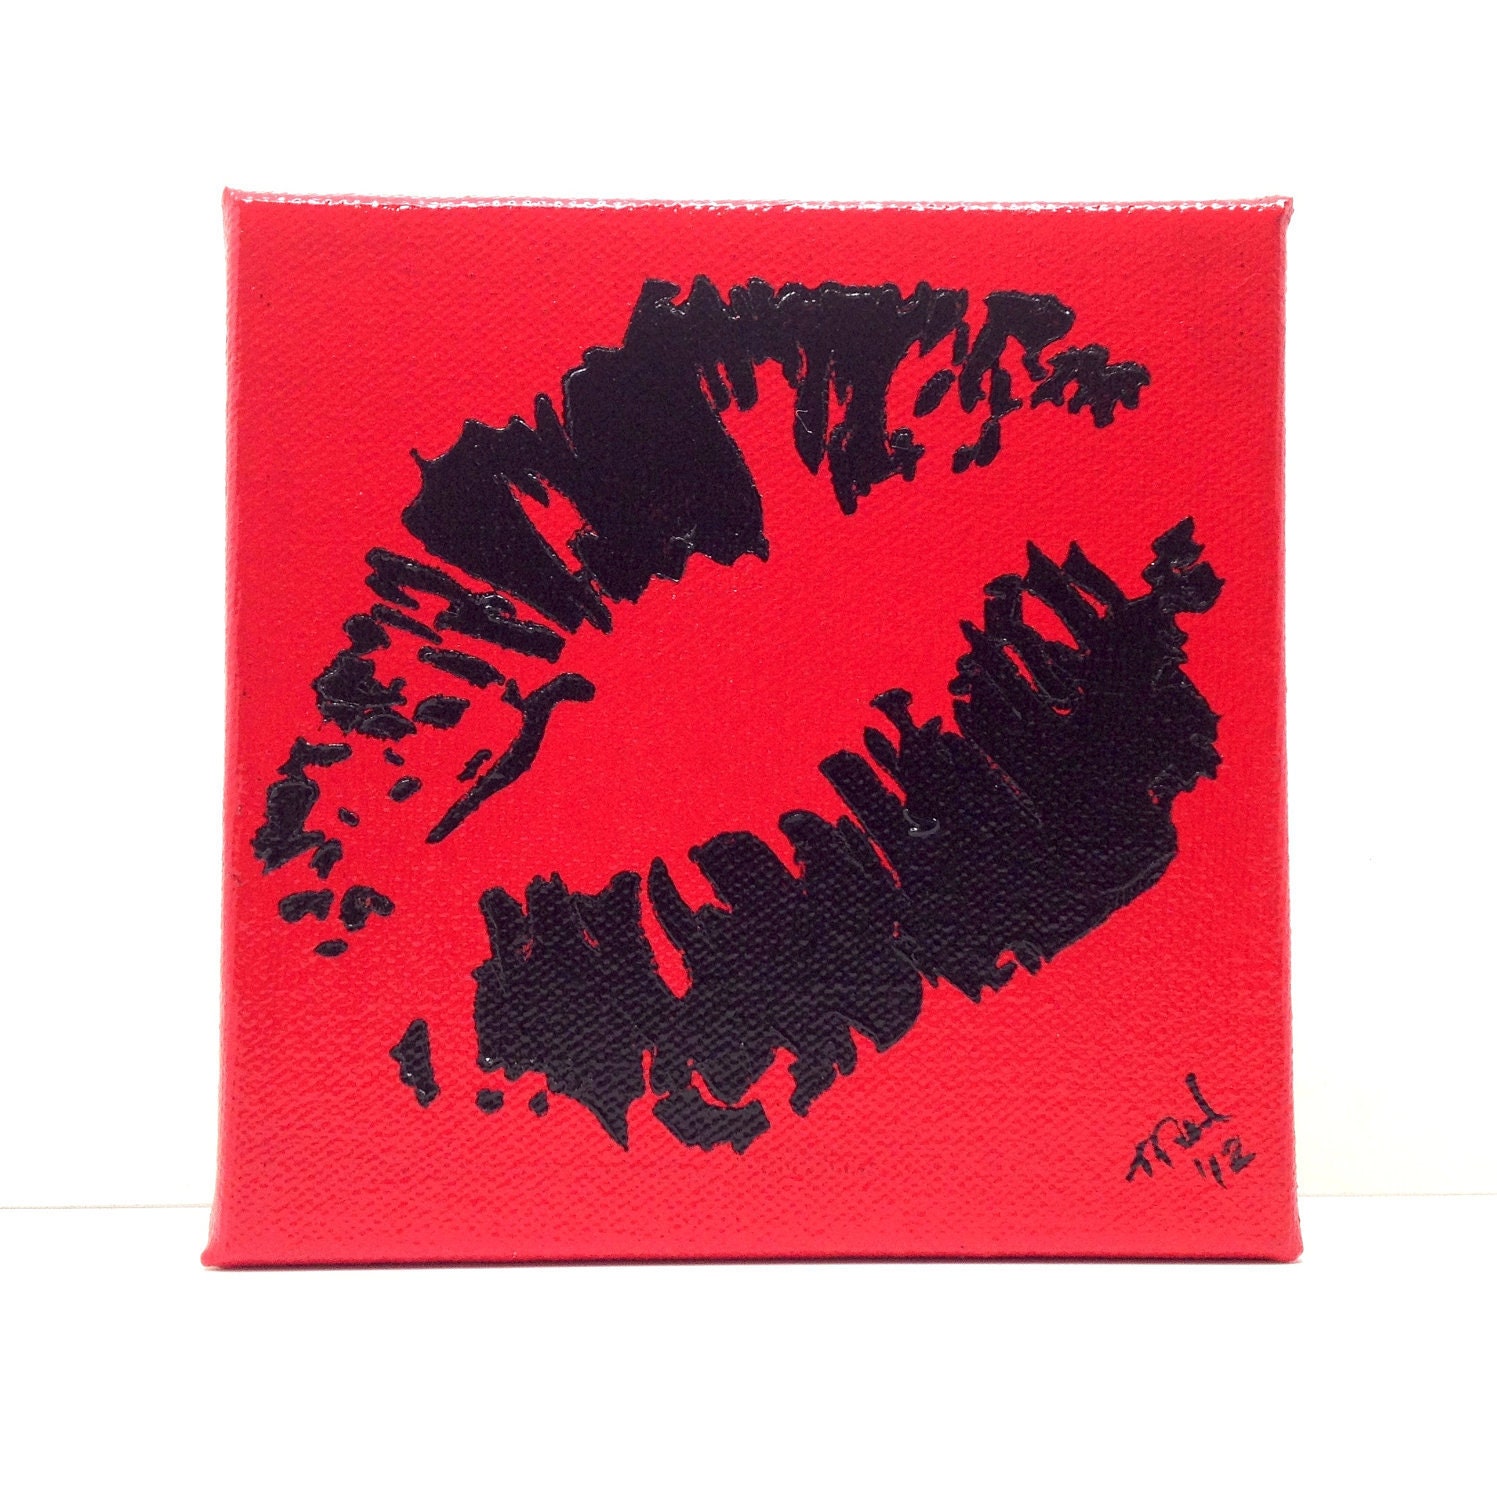 Pop Art, Graffiti Kiss, Lips, Black on Red Painting